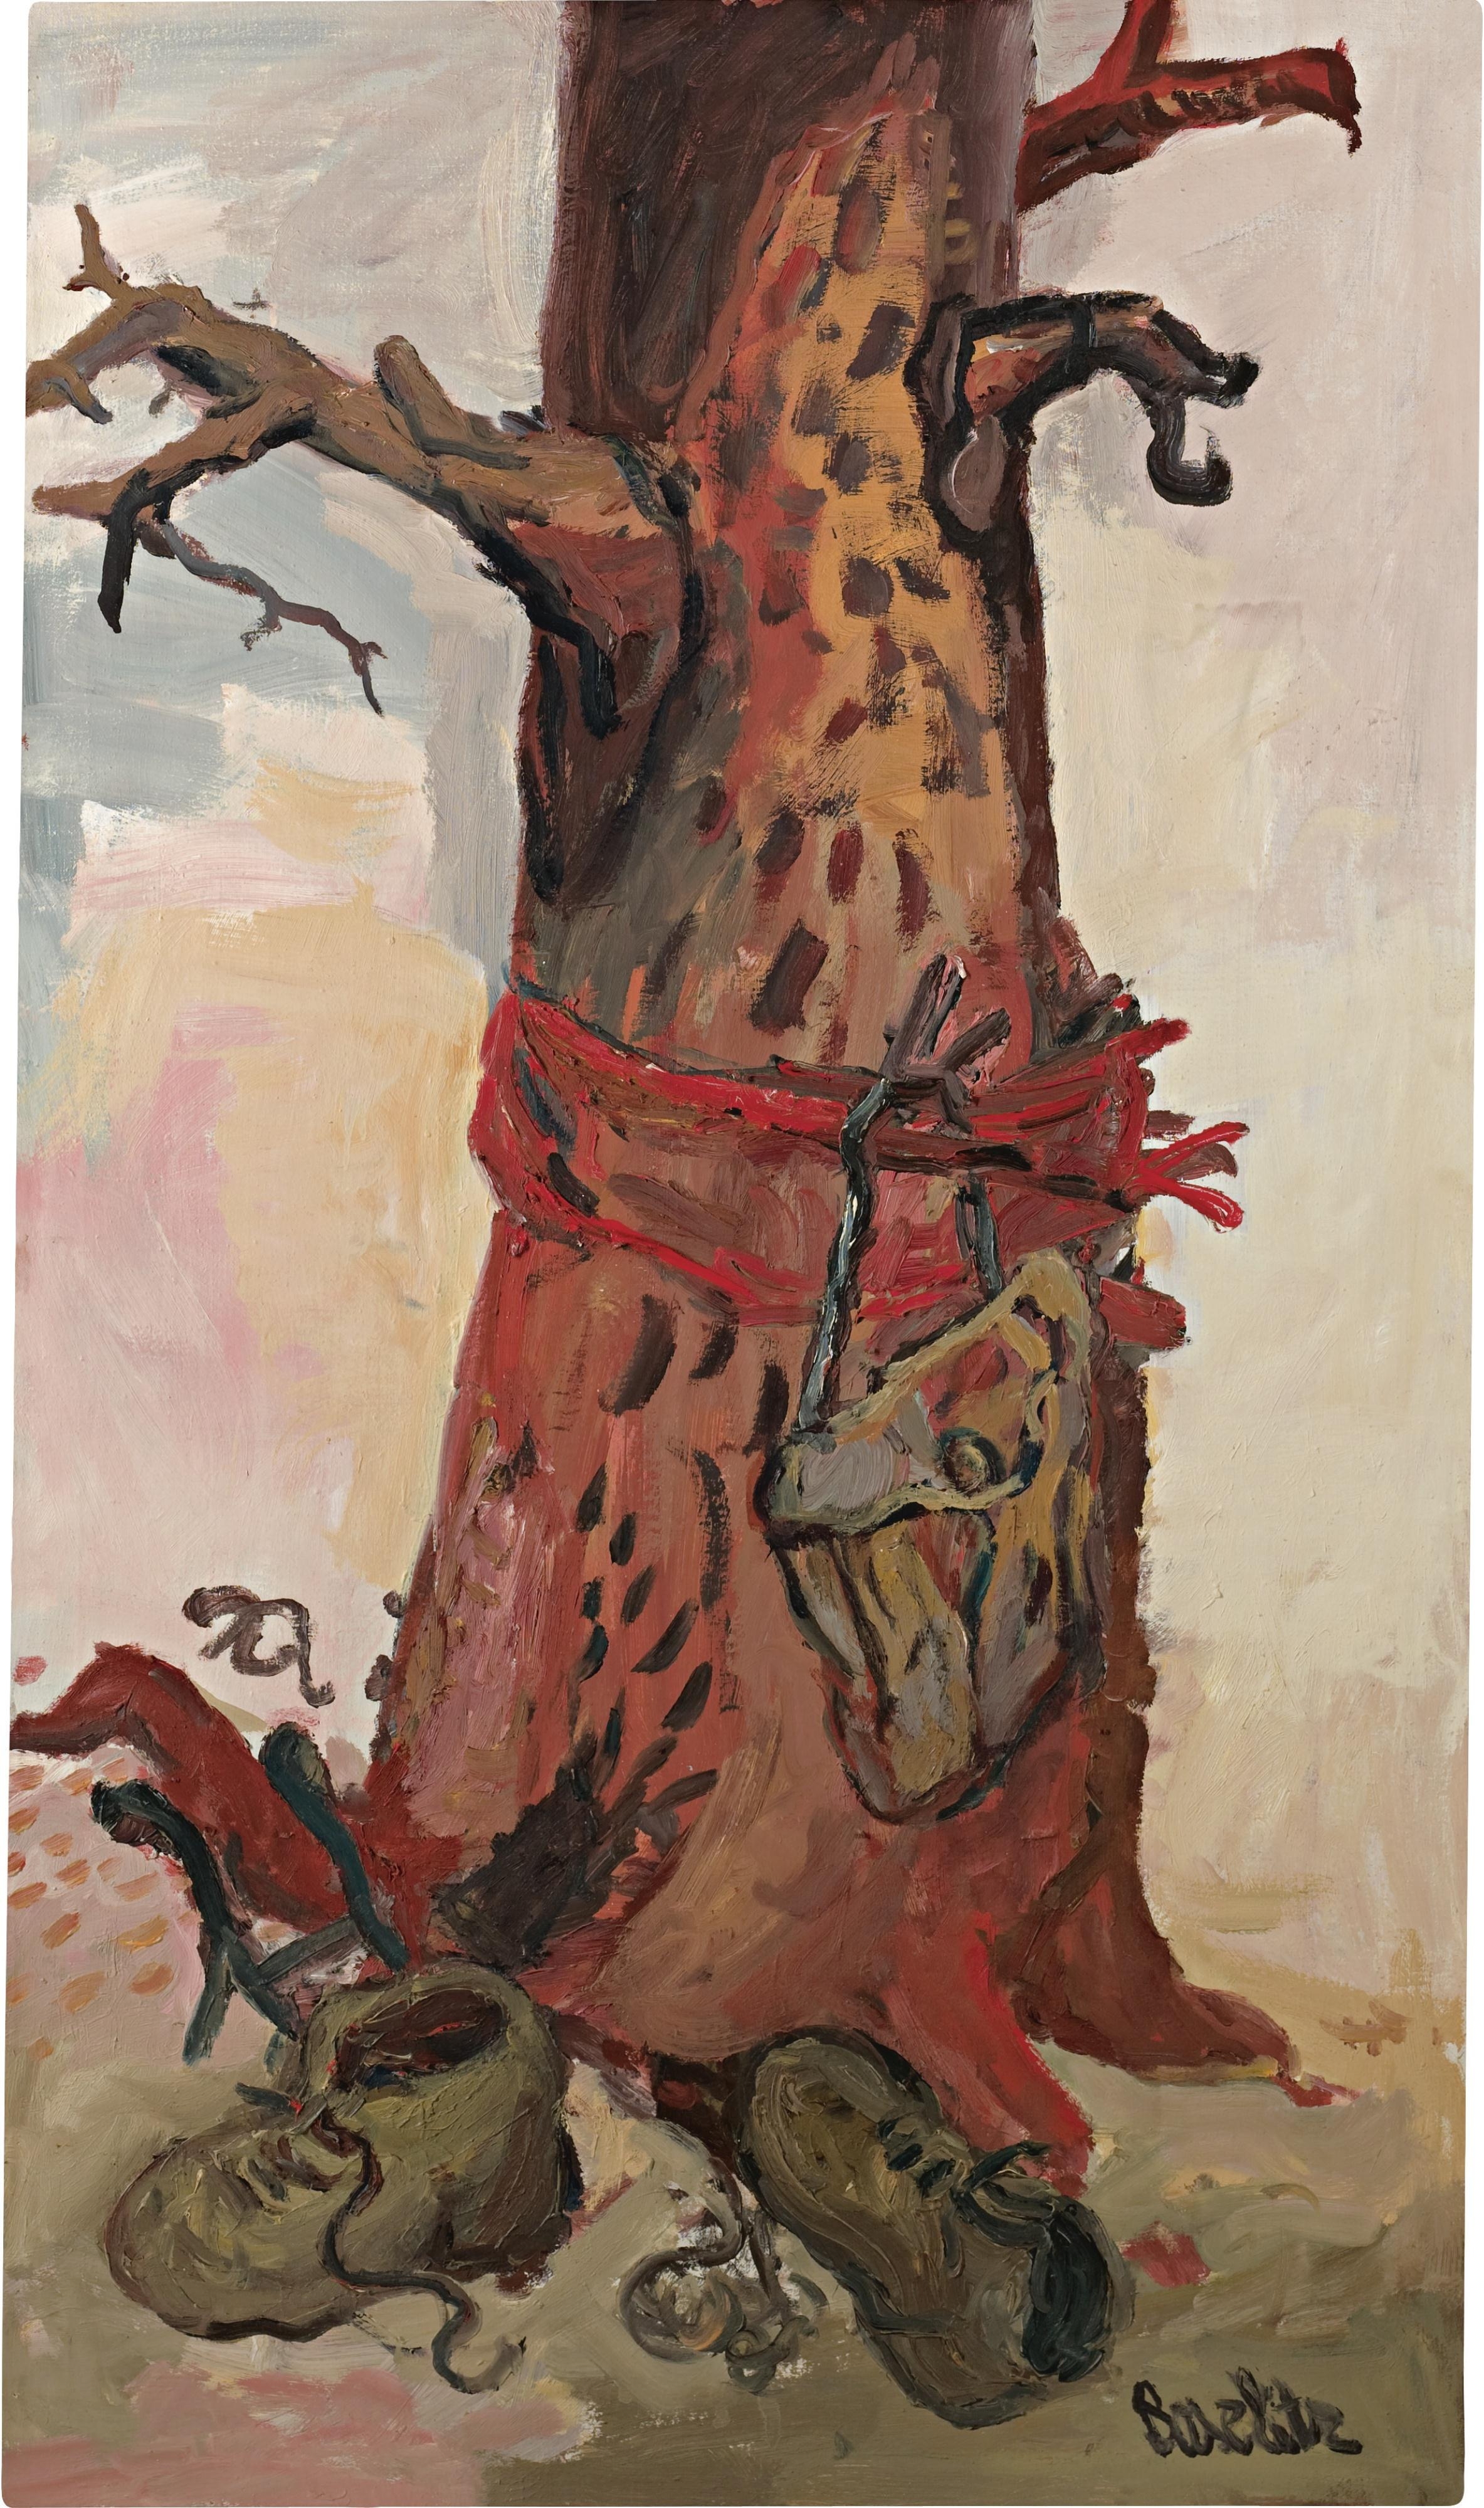 Der Baum (The Tree) by Georg Baselitz, 1966